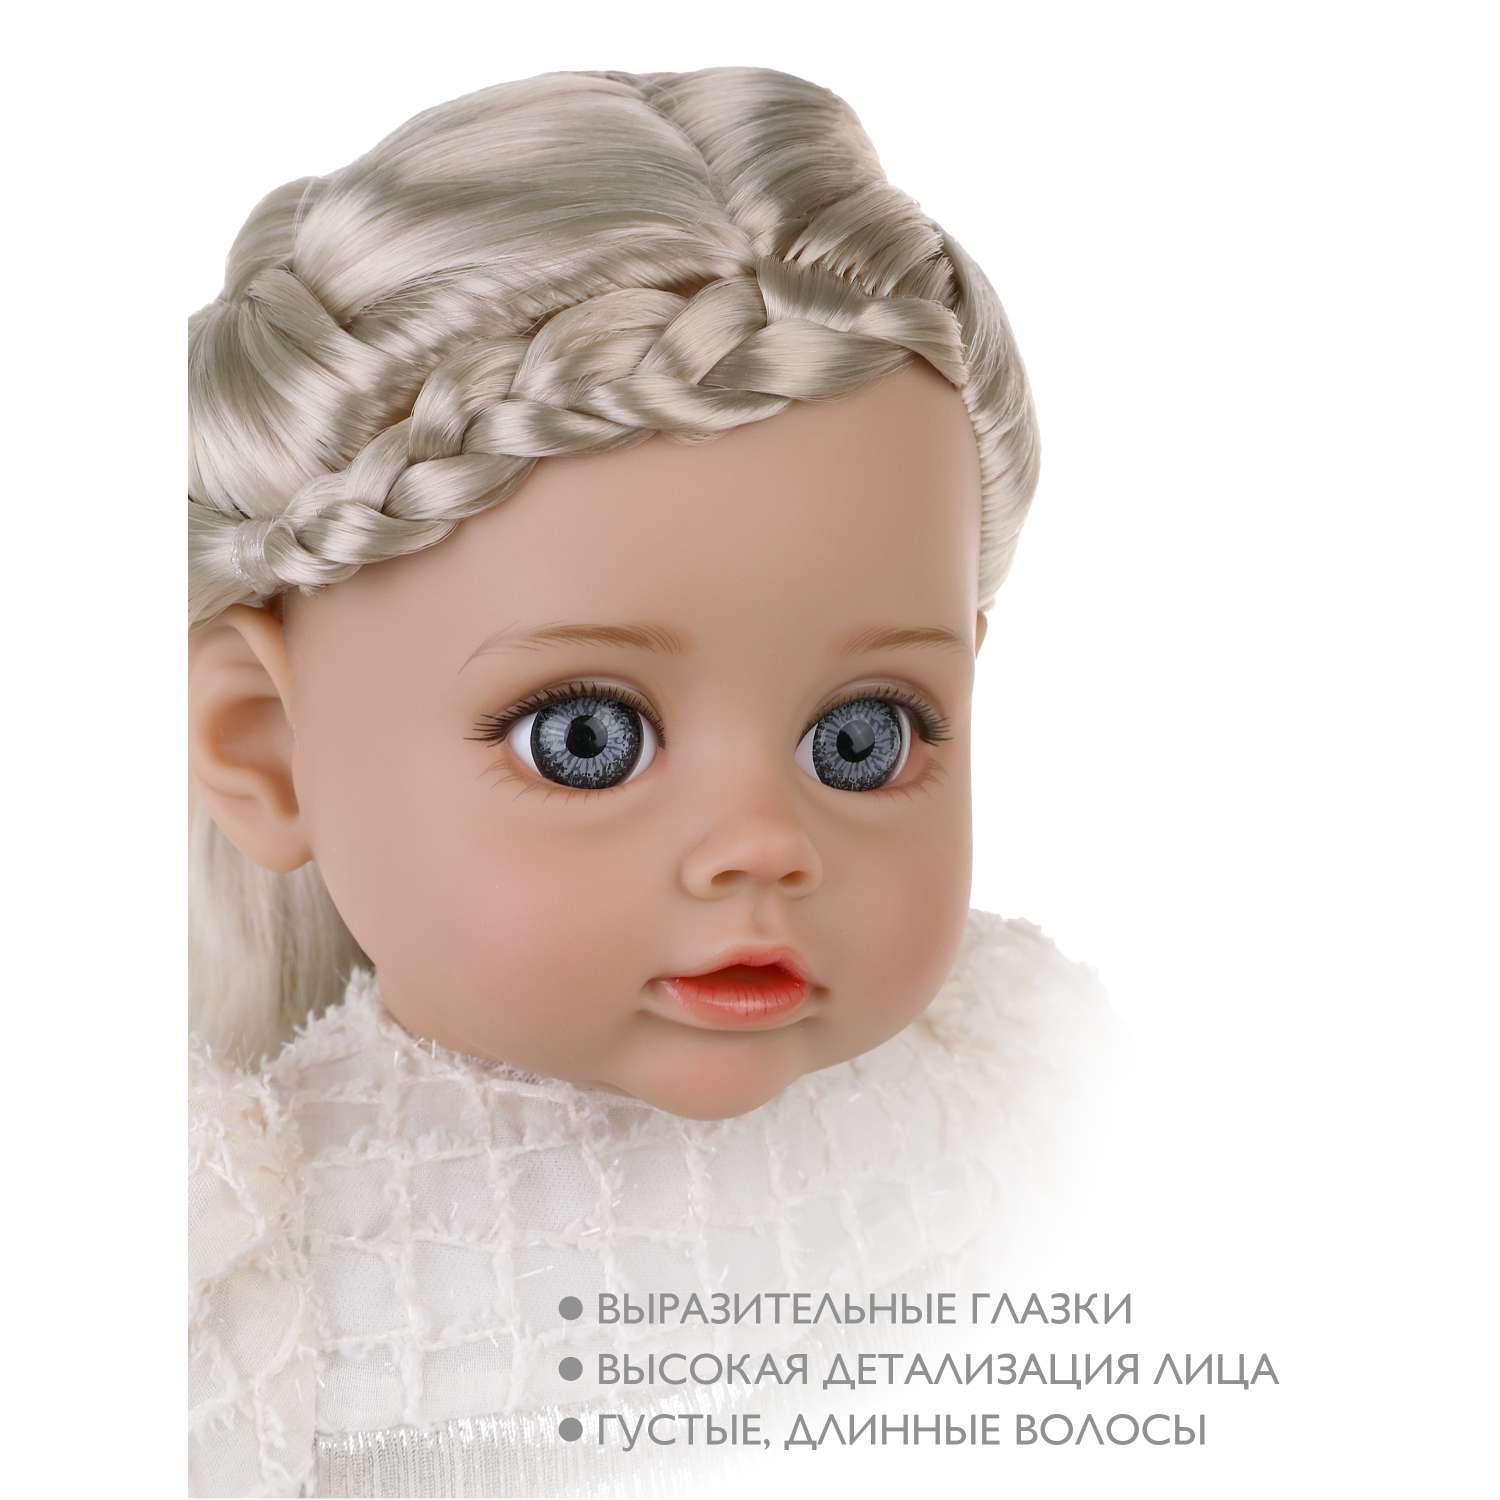 Кукла пупс для девочки Наша Игрушка Мягконабивная озвученная 35 см в белом платье 803820 - фото 2